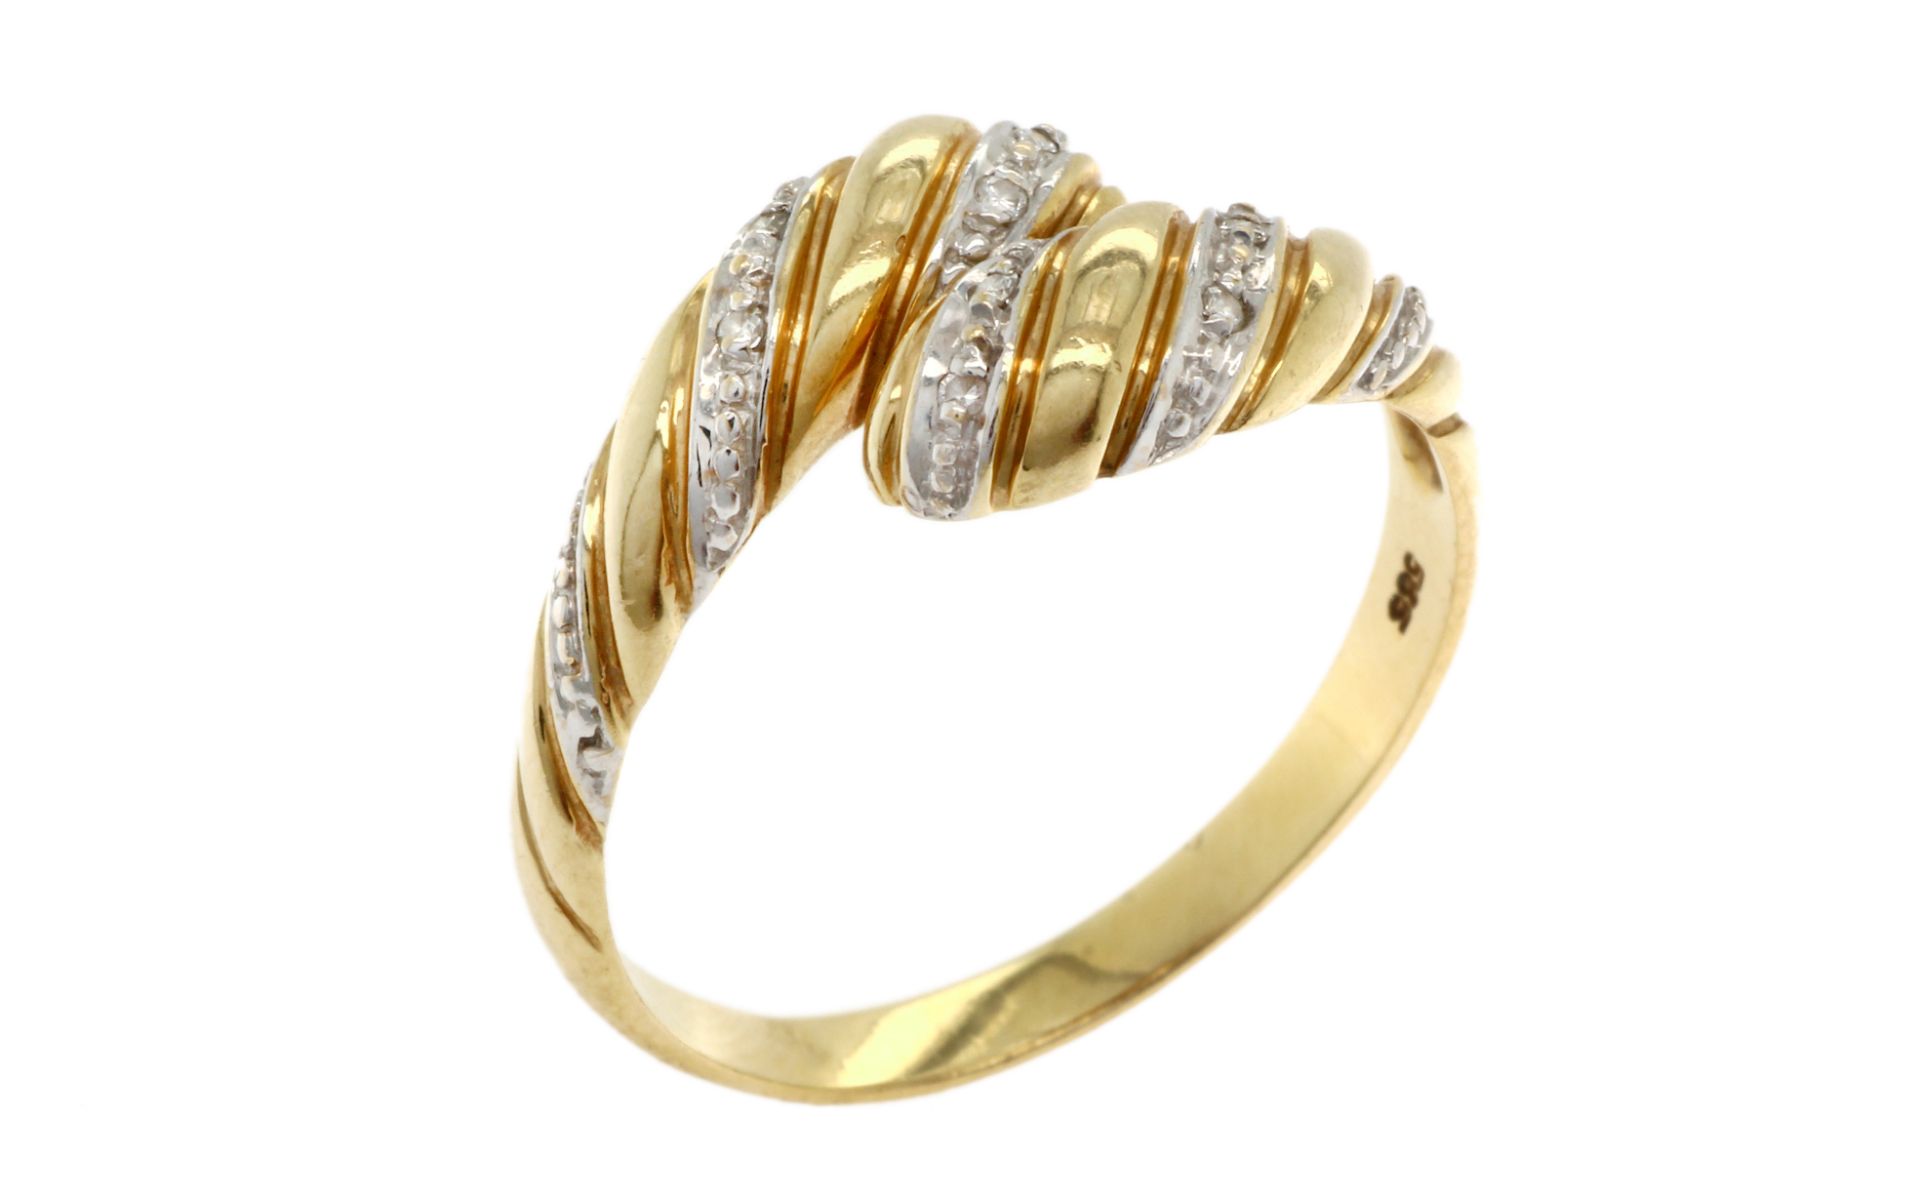 Ring 3.29g 585/- Gelbgold und Weissgold mit 8 Diamanten zus. ca. 0.08 ct.. Ringgroesse ca. 61